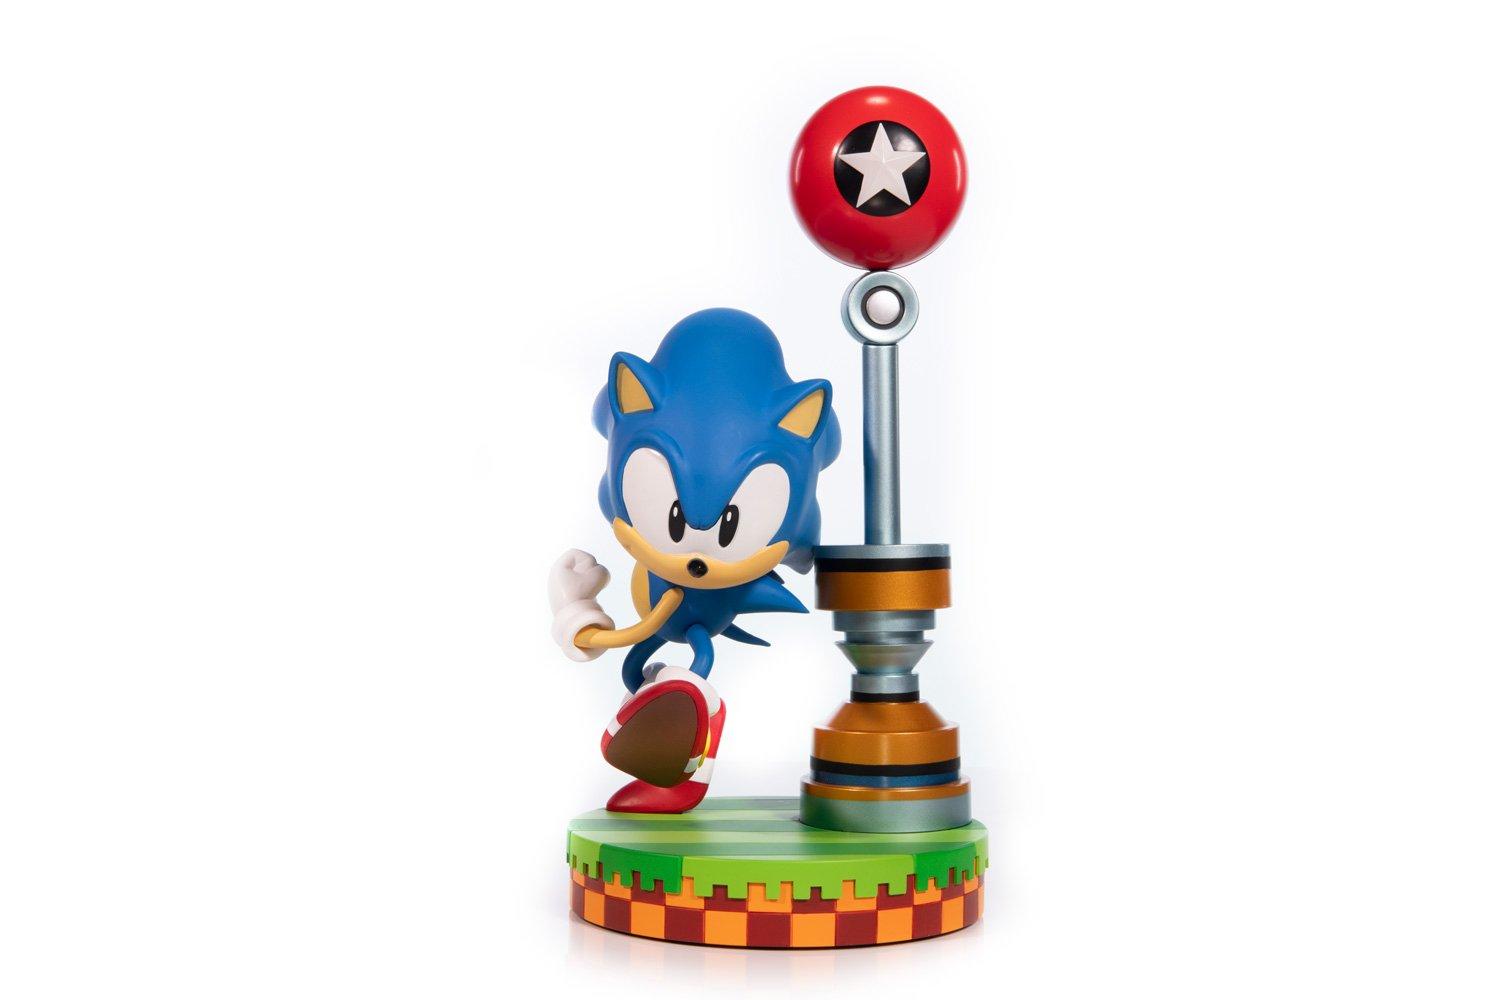 sonic the hedgehog statue gamestop